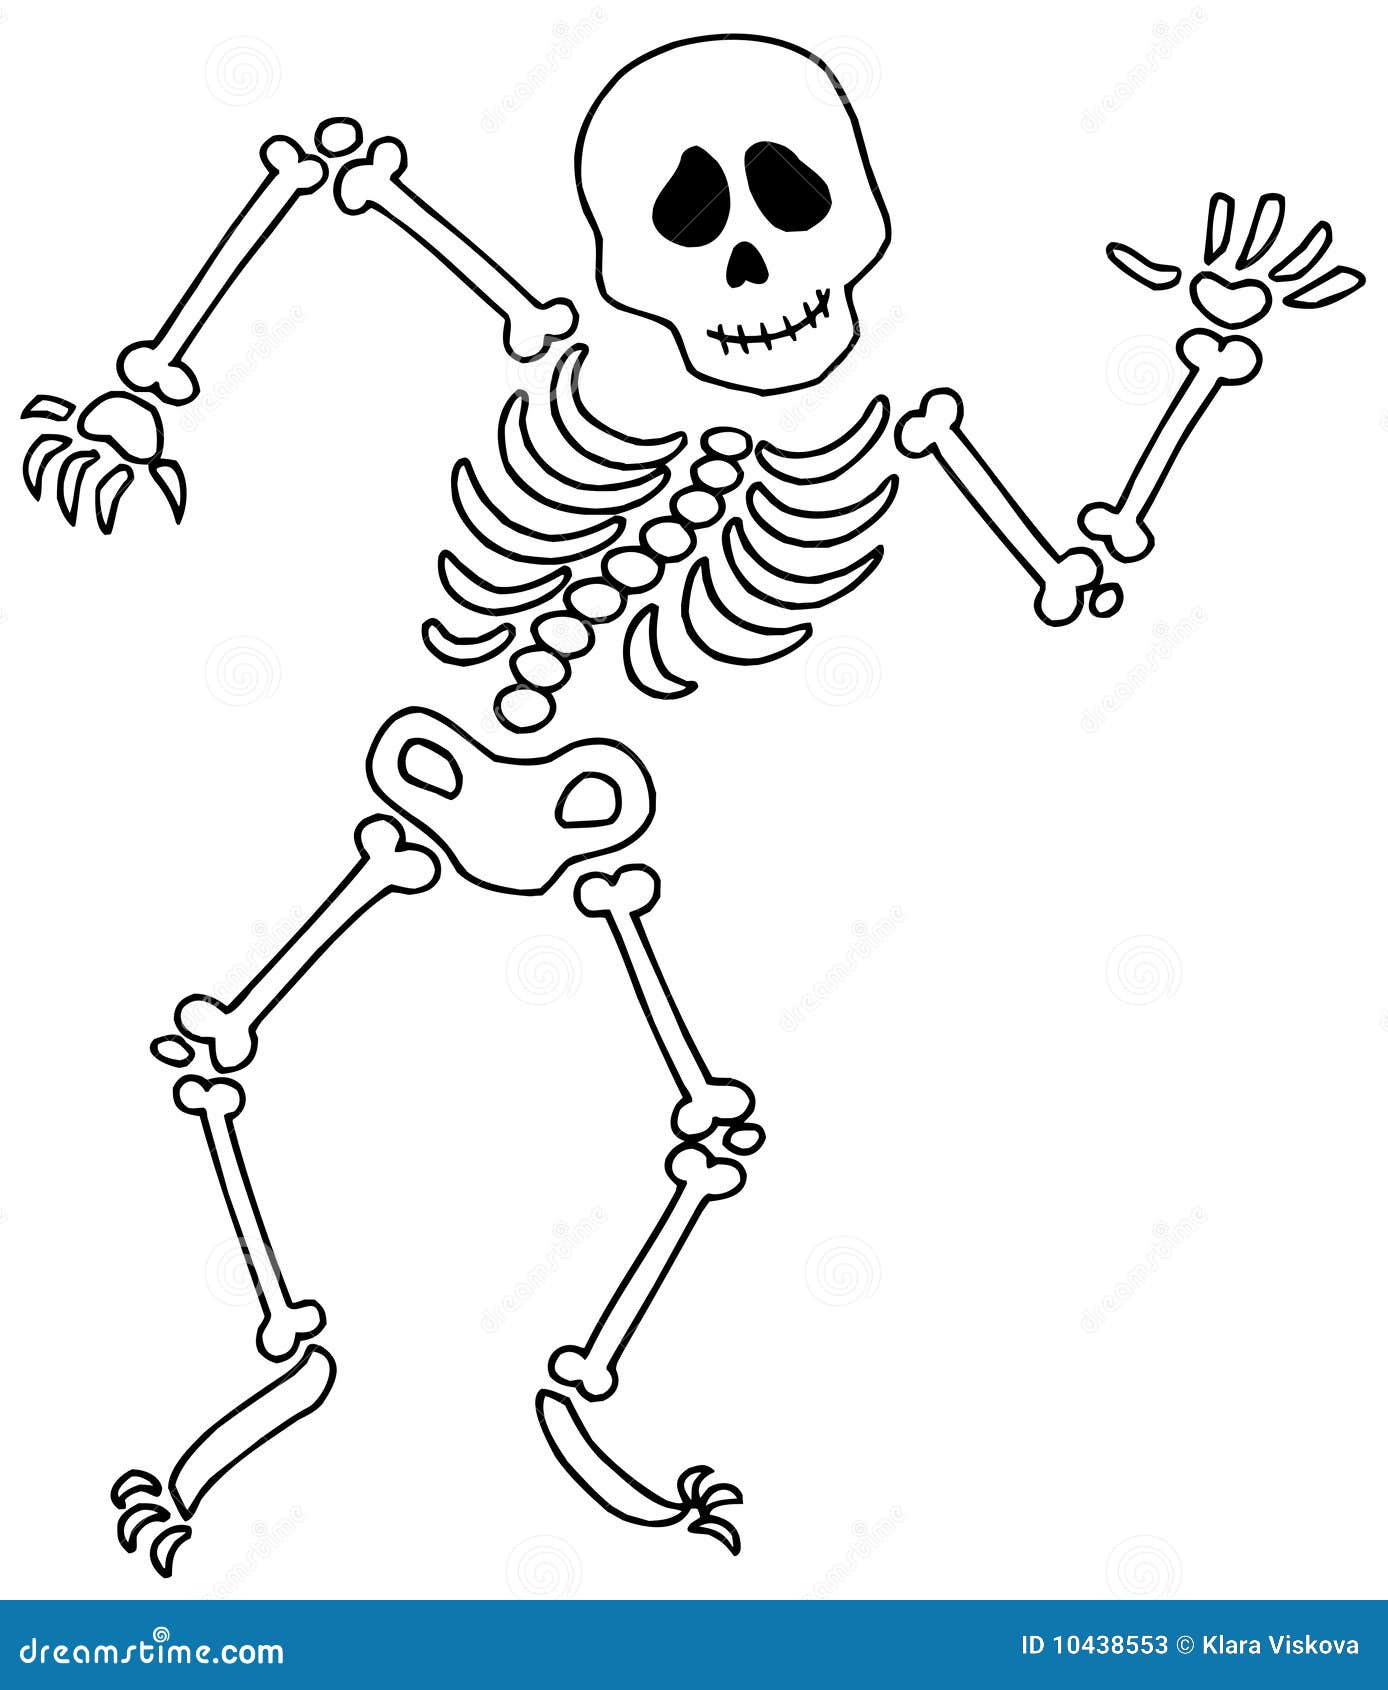 dancing-skeleton-10438553.jpg